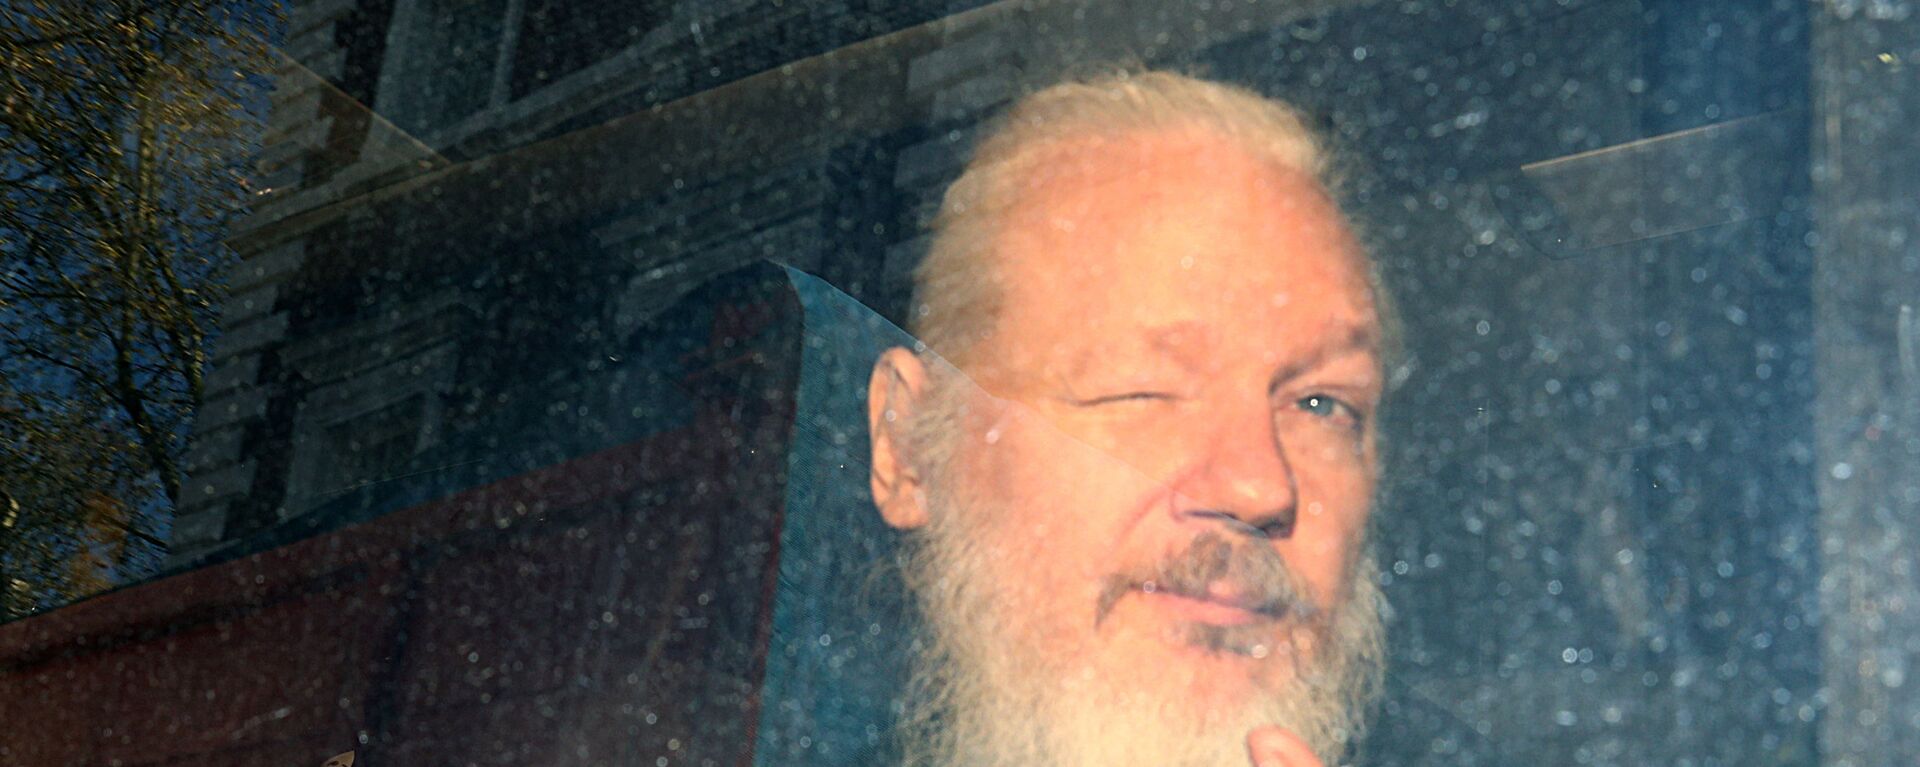 WikiLeaks'in kurucusu Julian Assange'ın gözaltına alındıktan sonraki ilk fotoğrafı. - Sputnik Türkiye, 1920, 10.12.2021